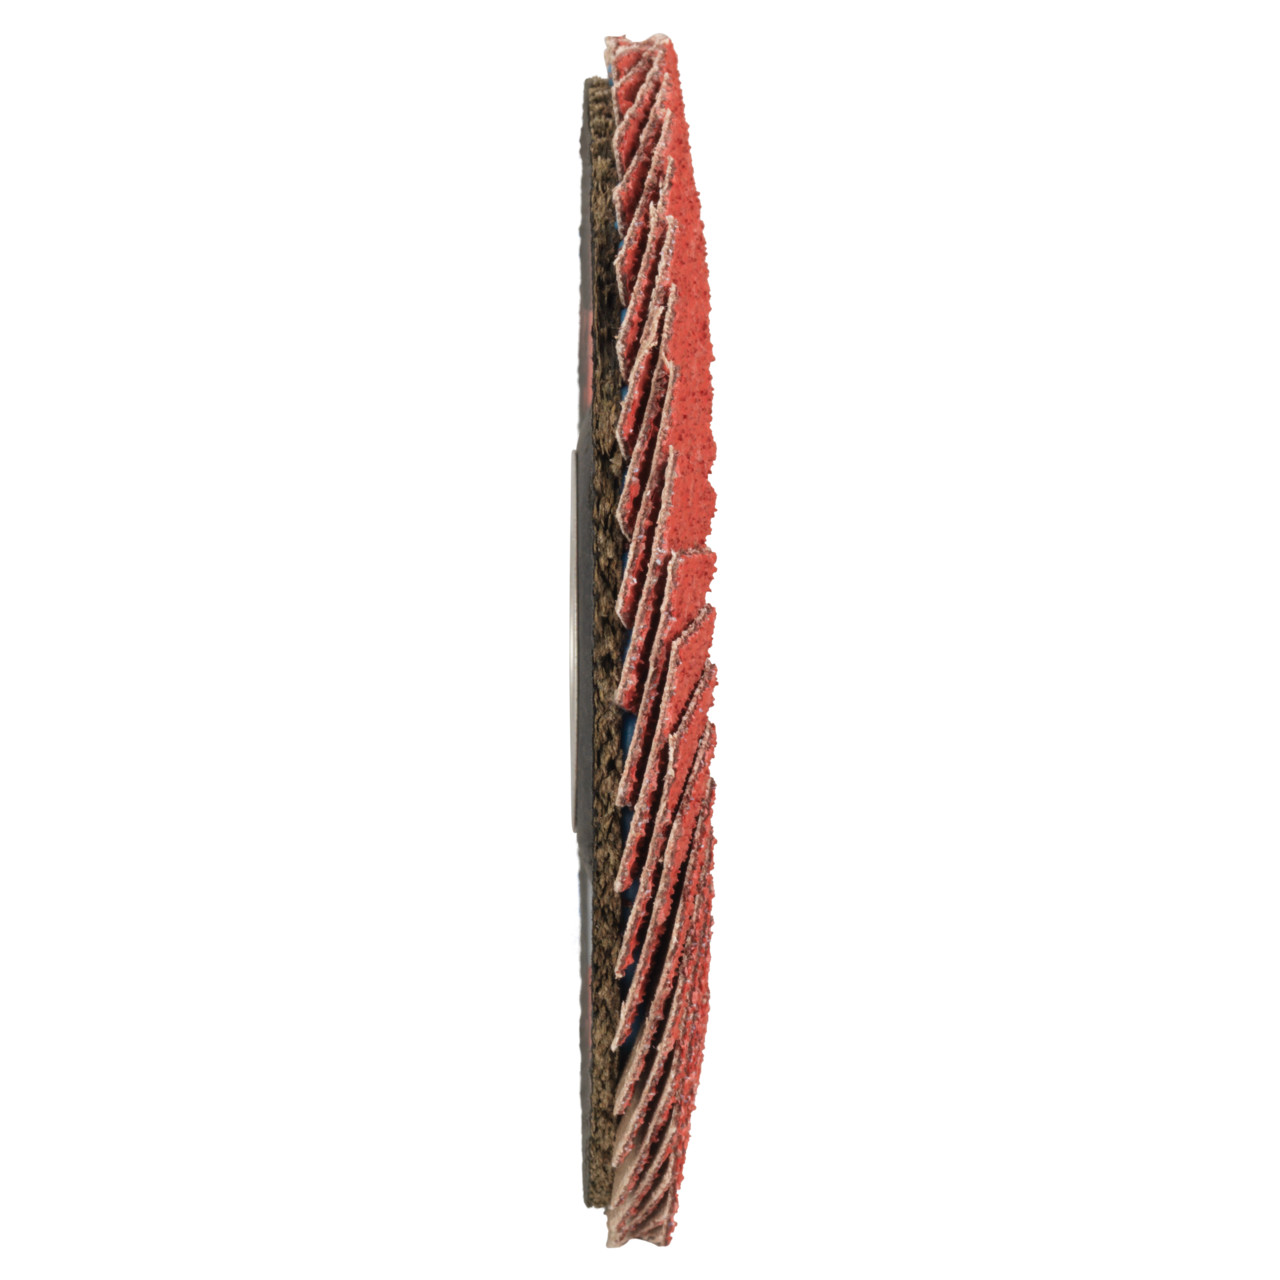 Tyrolit Rondelle éventail DxH 115x22,23 CERAMIC pour acier inoxydable, P80, forme : 28A - modèle droit (modèle à corps en fibre de verre), art. 34166687